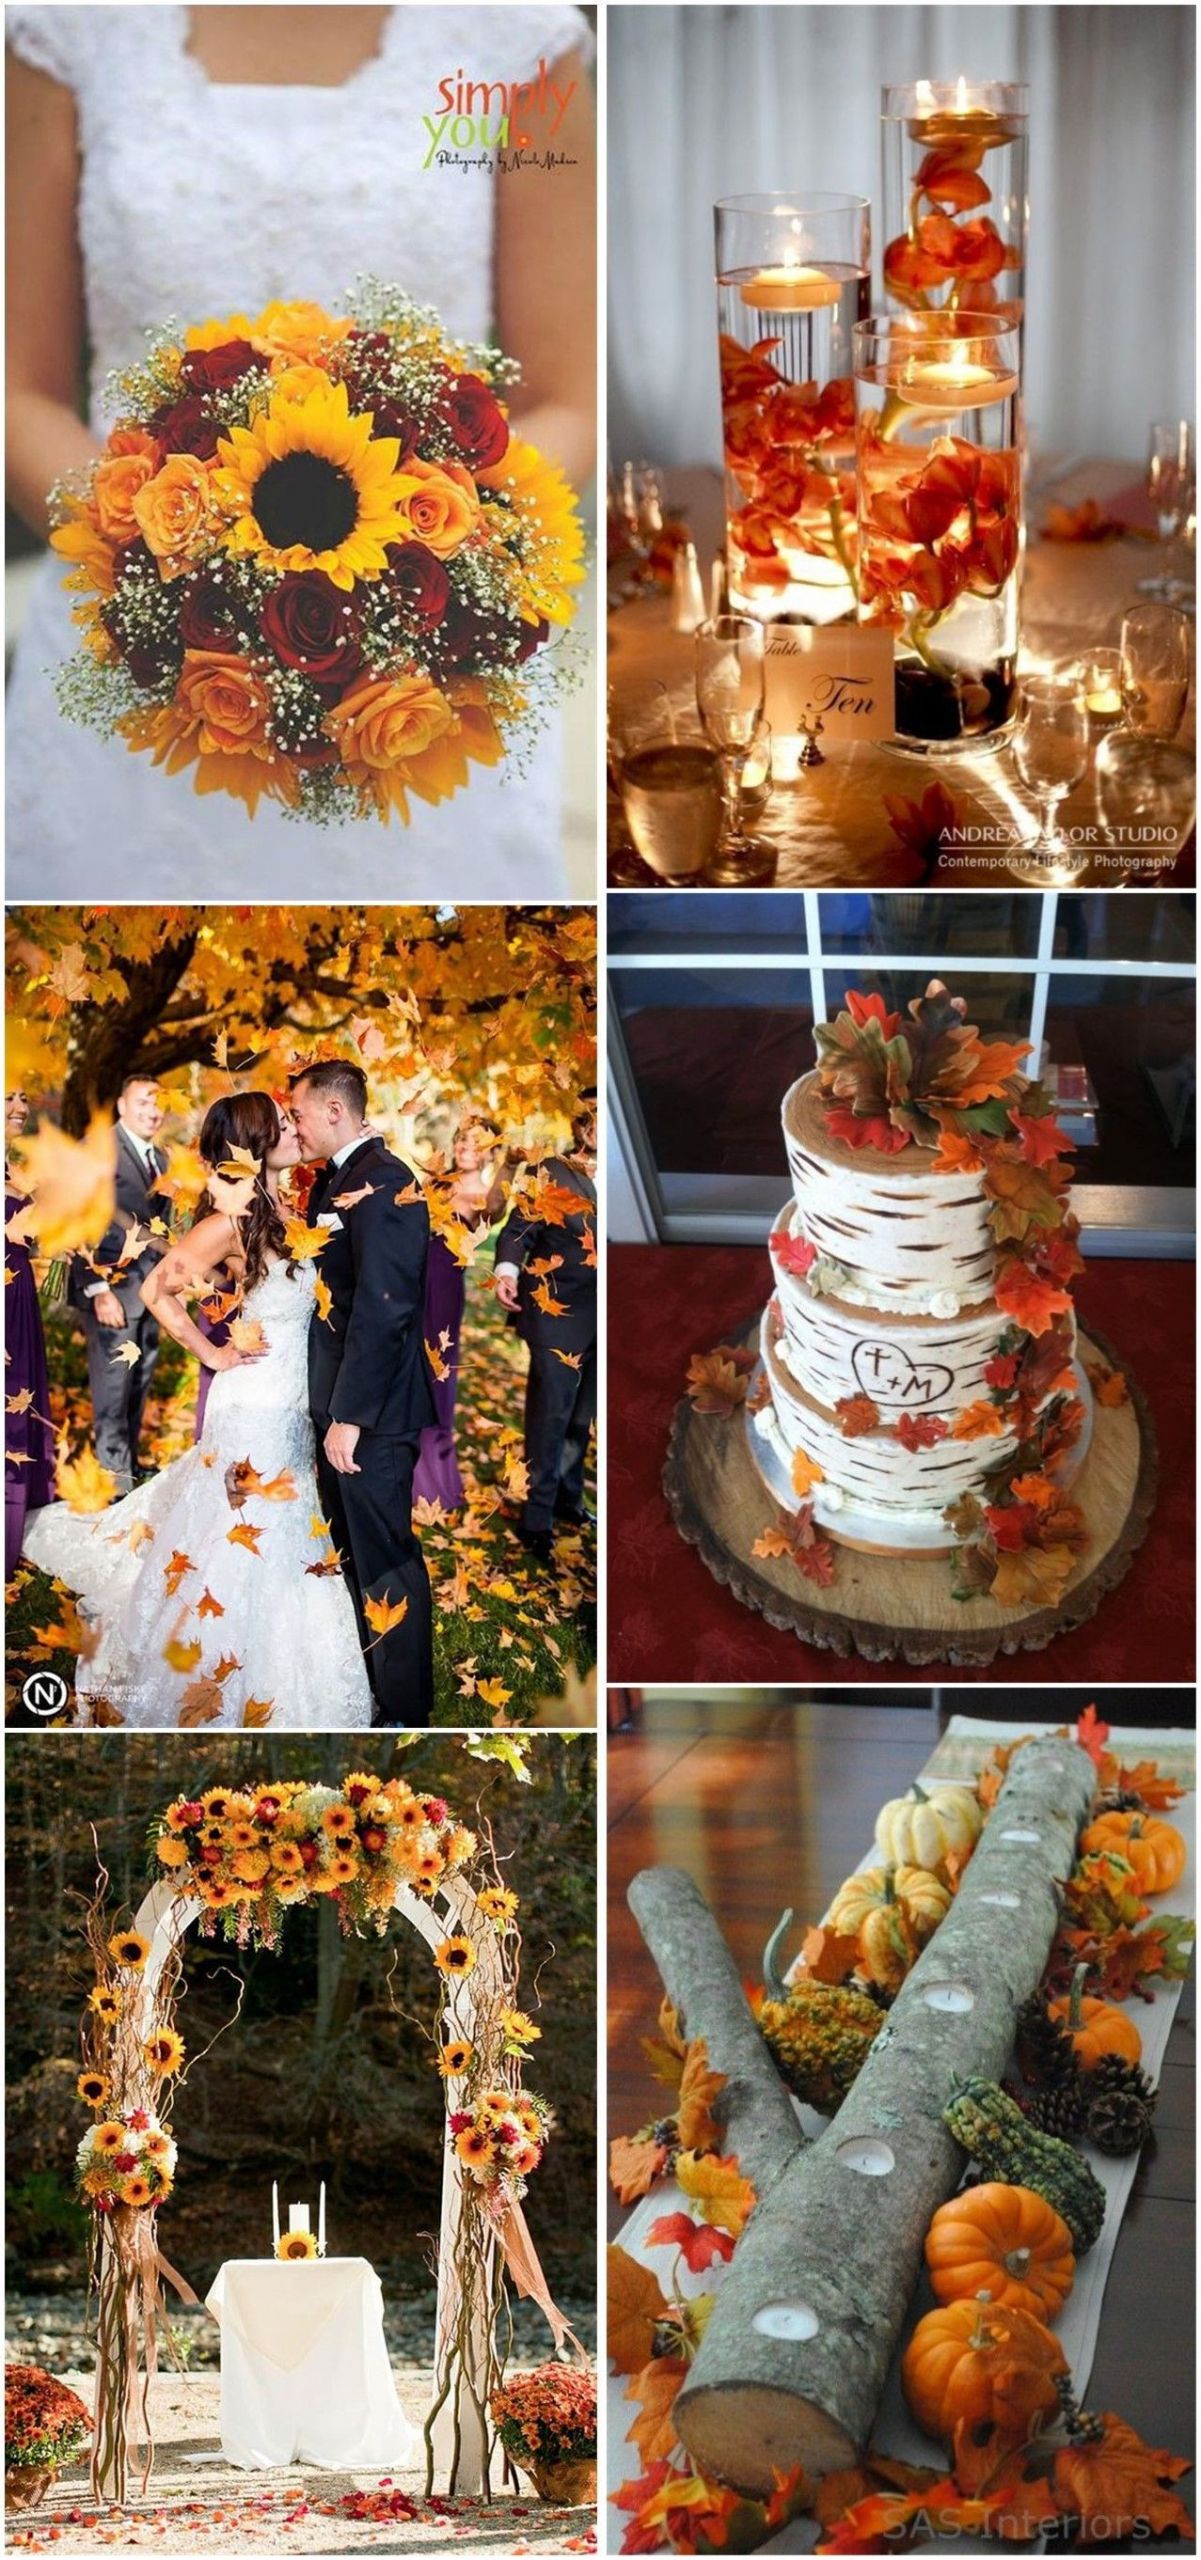 Autumn Wedding Decor
 23 Best Fall Wedding Ideas in 2019